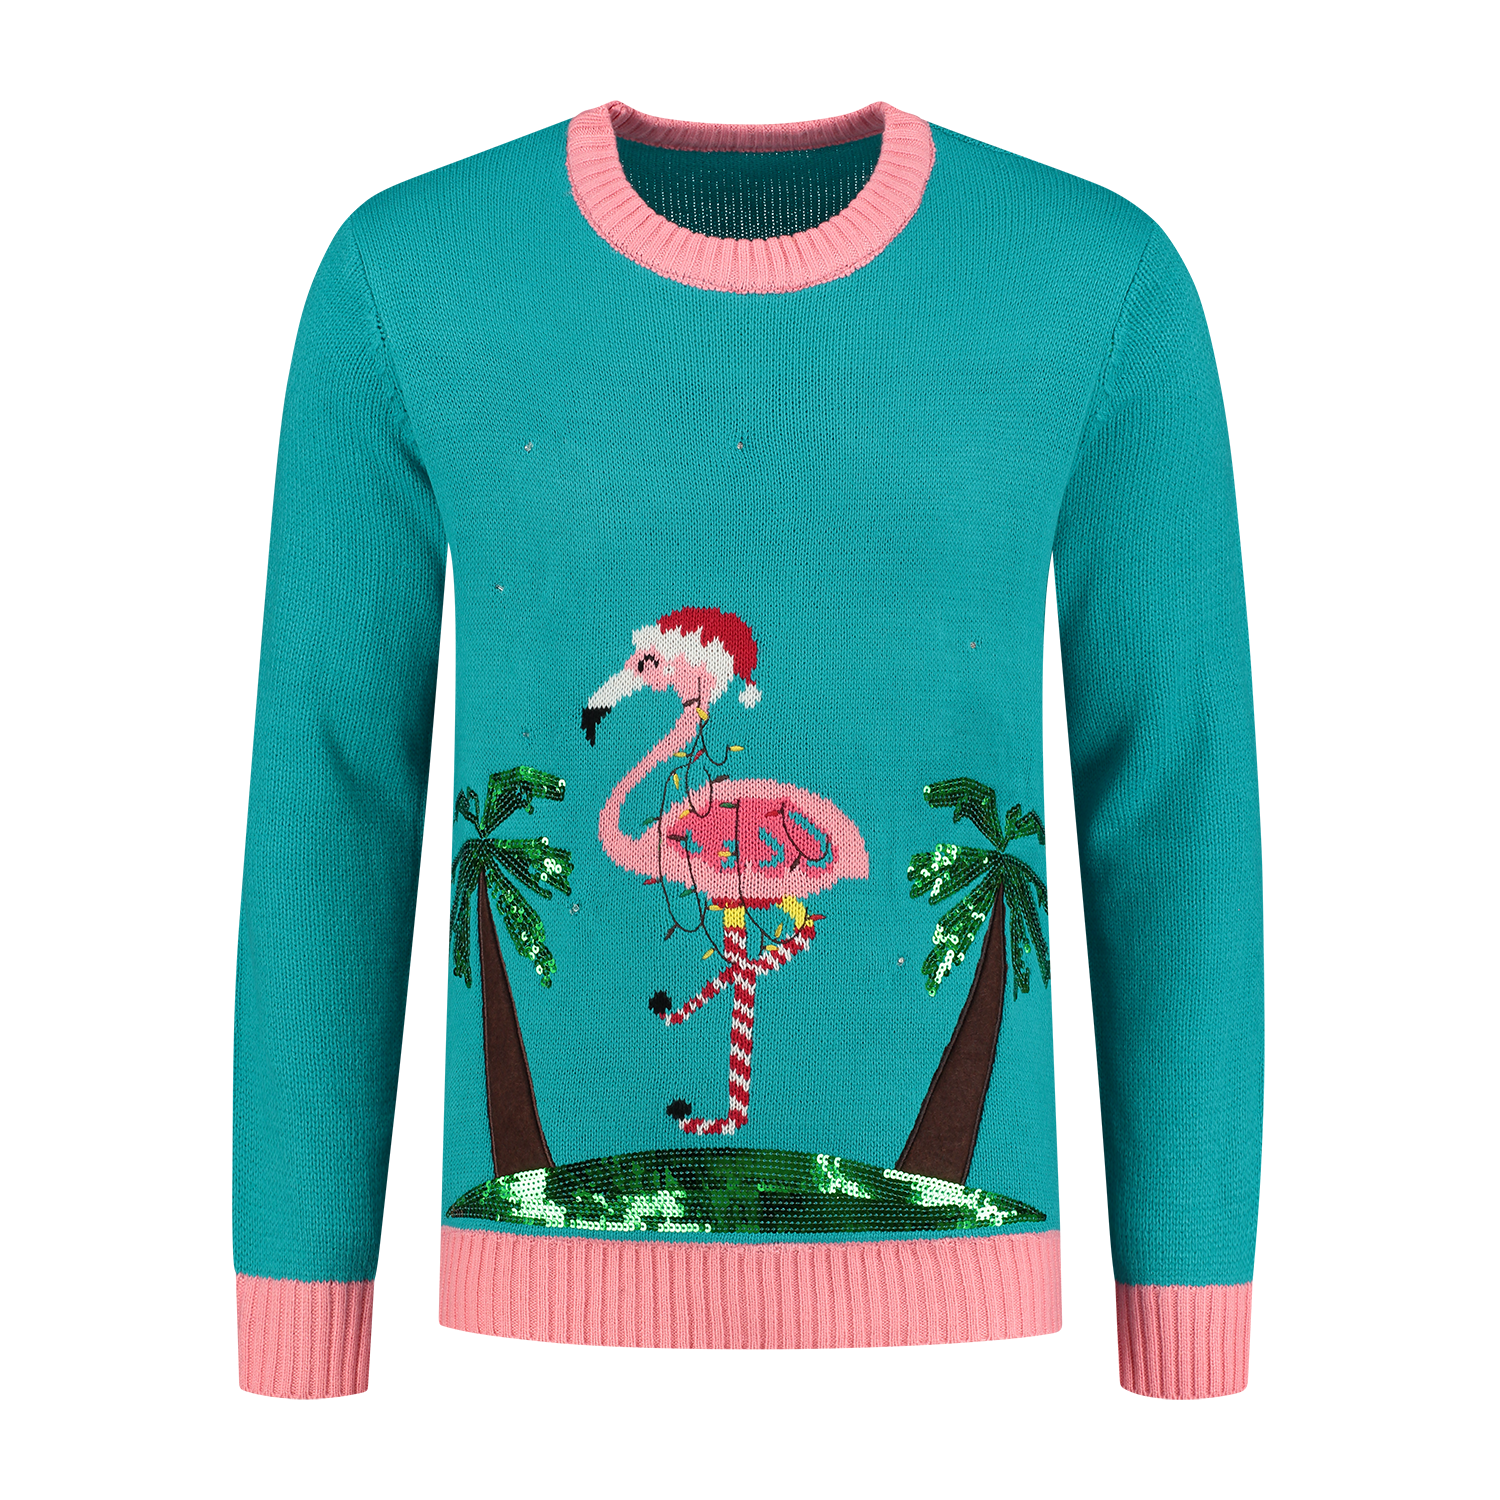 ᐅ Sweater Caribbean with led Kerst, Kersttruien kopen